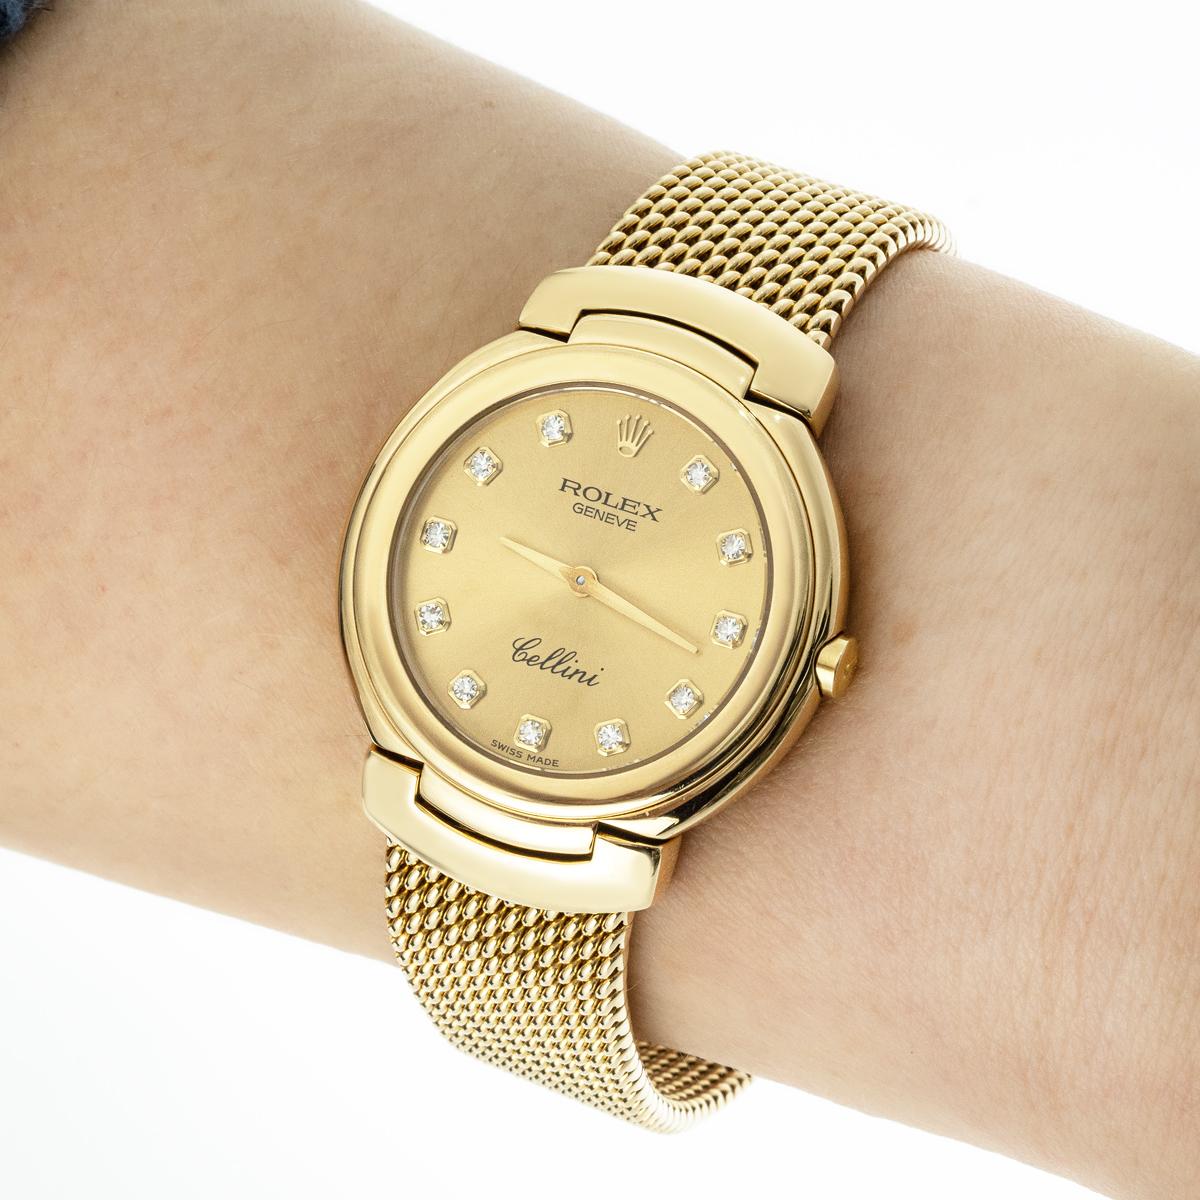 Une montre-bracelet Cellini en or jaune de Rolex. Cadran champagne avec index et chiffres sertis de diamants, lunette en or jaune. Équipée d'un bracelet intégré en or jaune et d'un fermoir déployant. La montre est également équipée d'un verre saphir